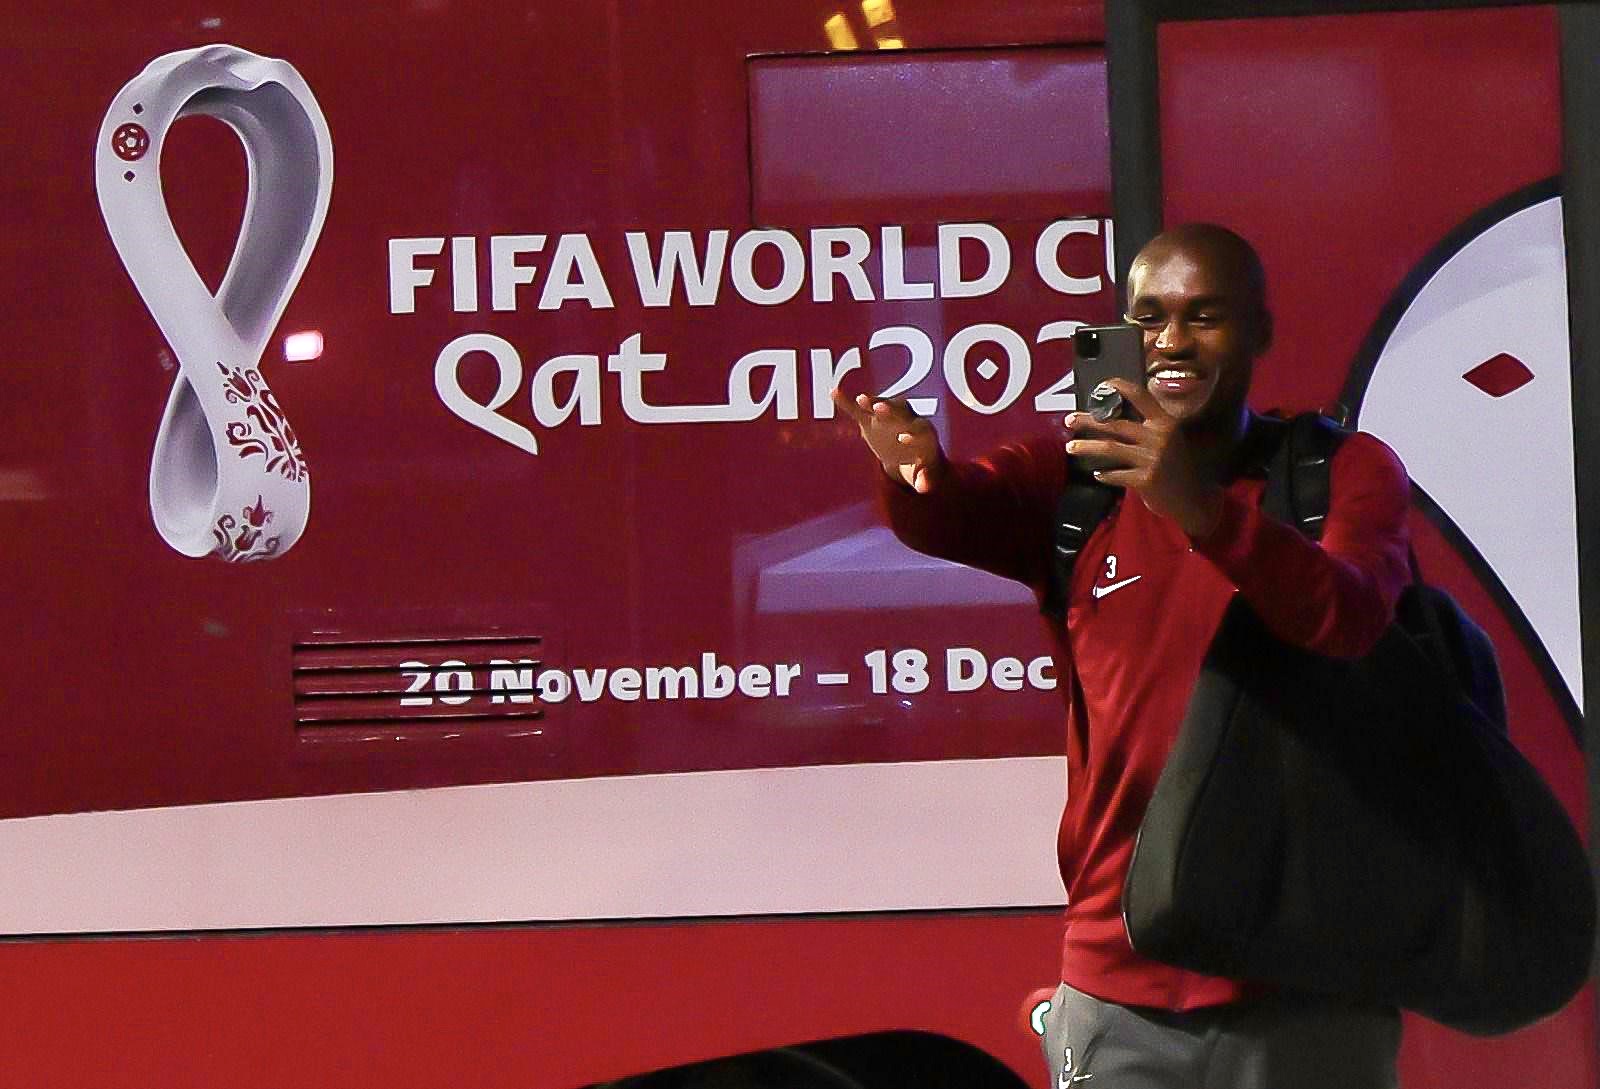 Qatar Airways transporte 140 FIFA Legends à la Coupe du Monde de foot